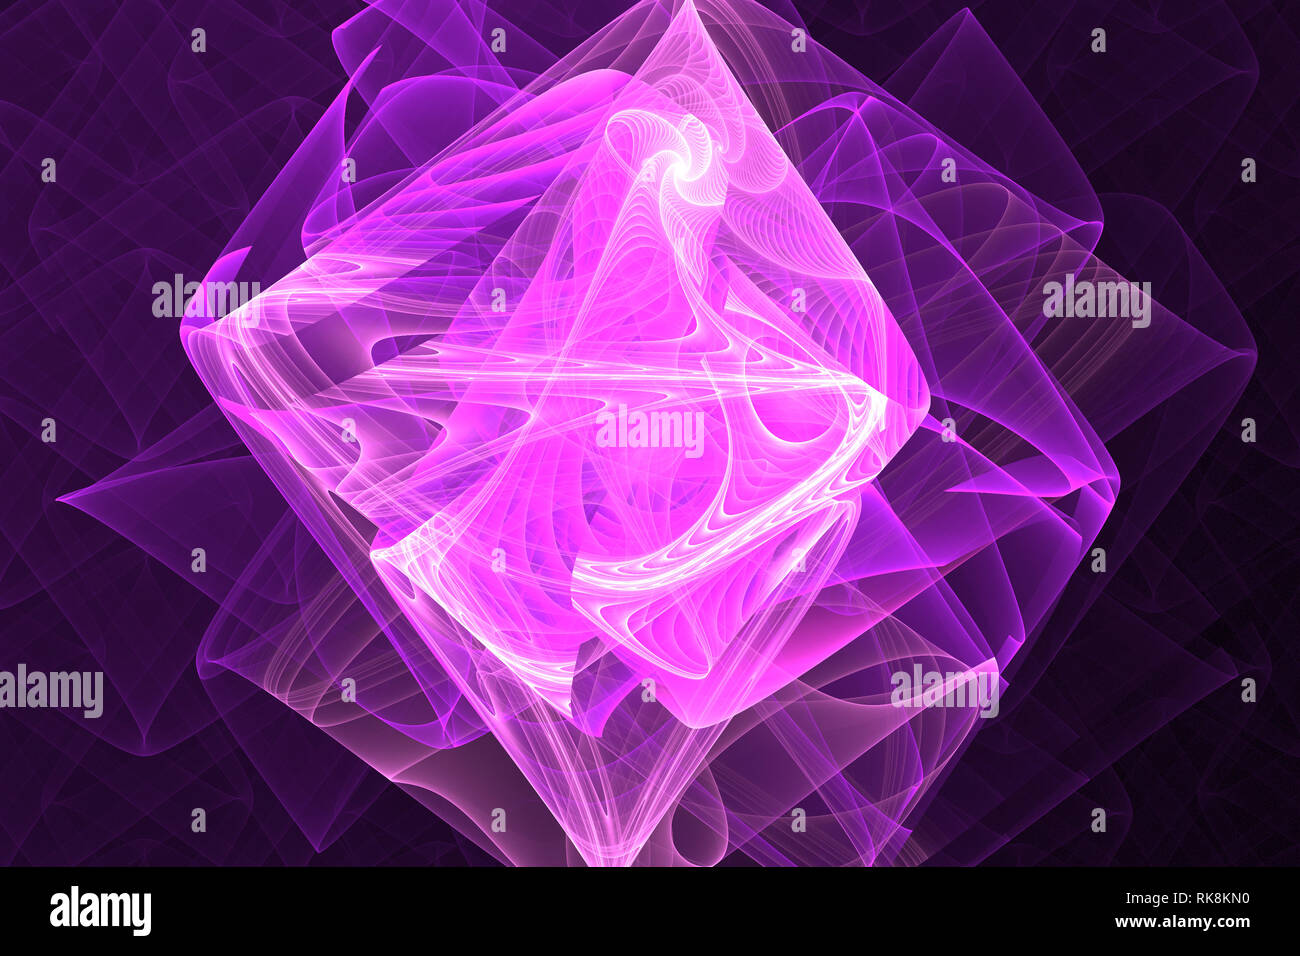 Forme fractale géométrique animé peut illustrer la rêverie imagination rêves espace psychédélique magic explosion nucléaire rayonnement modèles de fréquence Banque D'Images